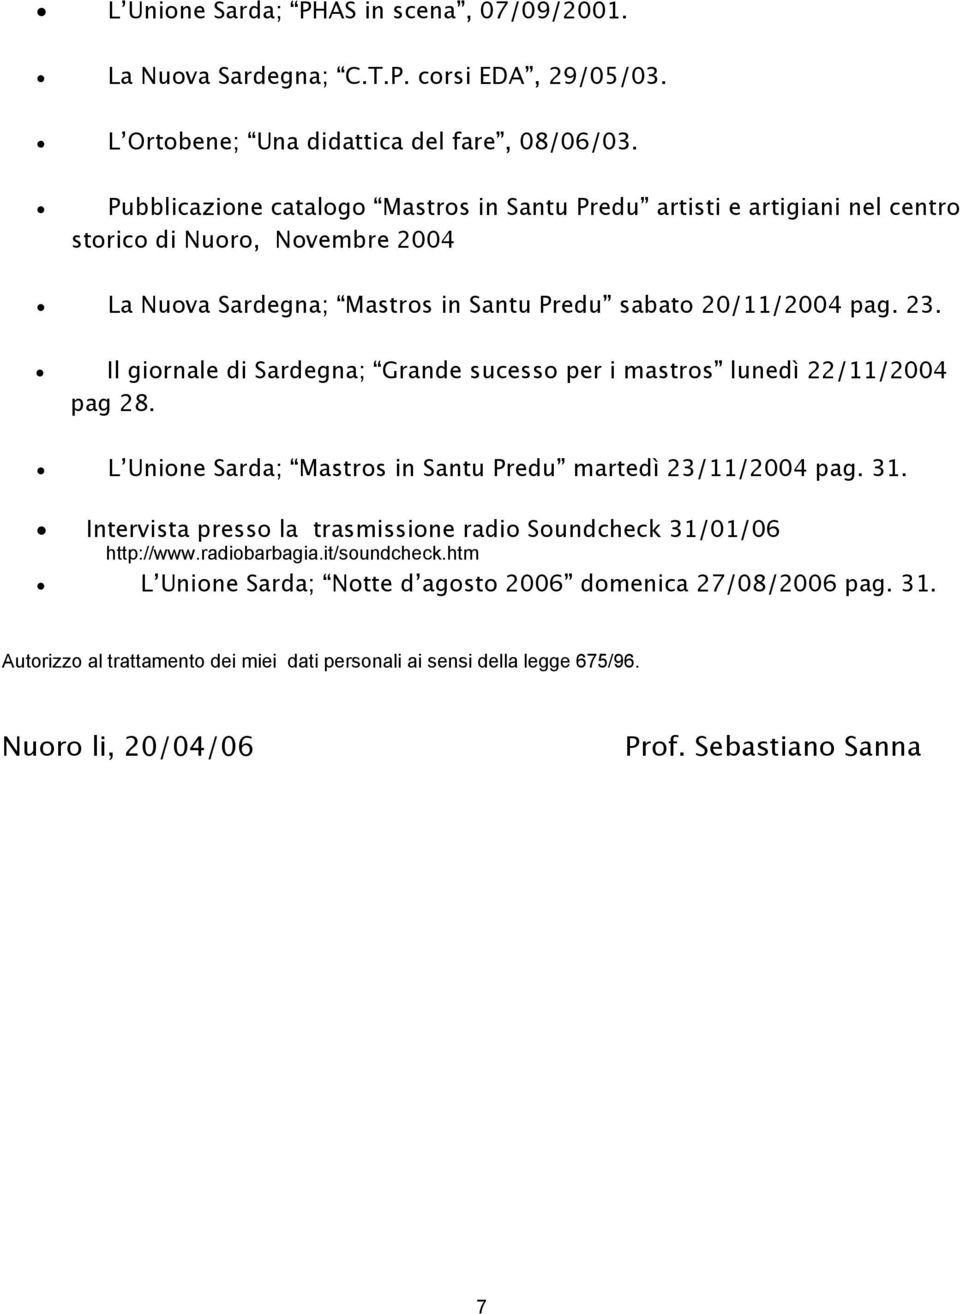 Il giornale di Sardegna; Grande sucesso per i mastros lunedì 22/11/2004 pag 28. L Unione Sarda; Mastros in Santu Predu martedì 23/11/2004 pag. 31.